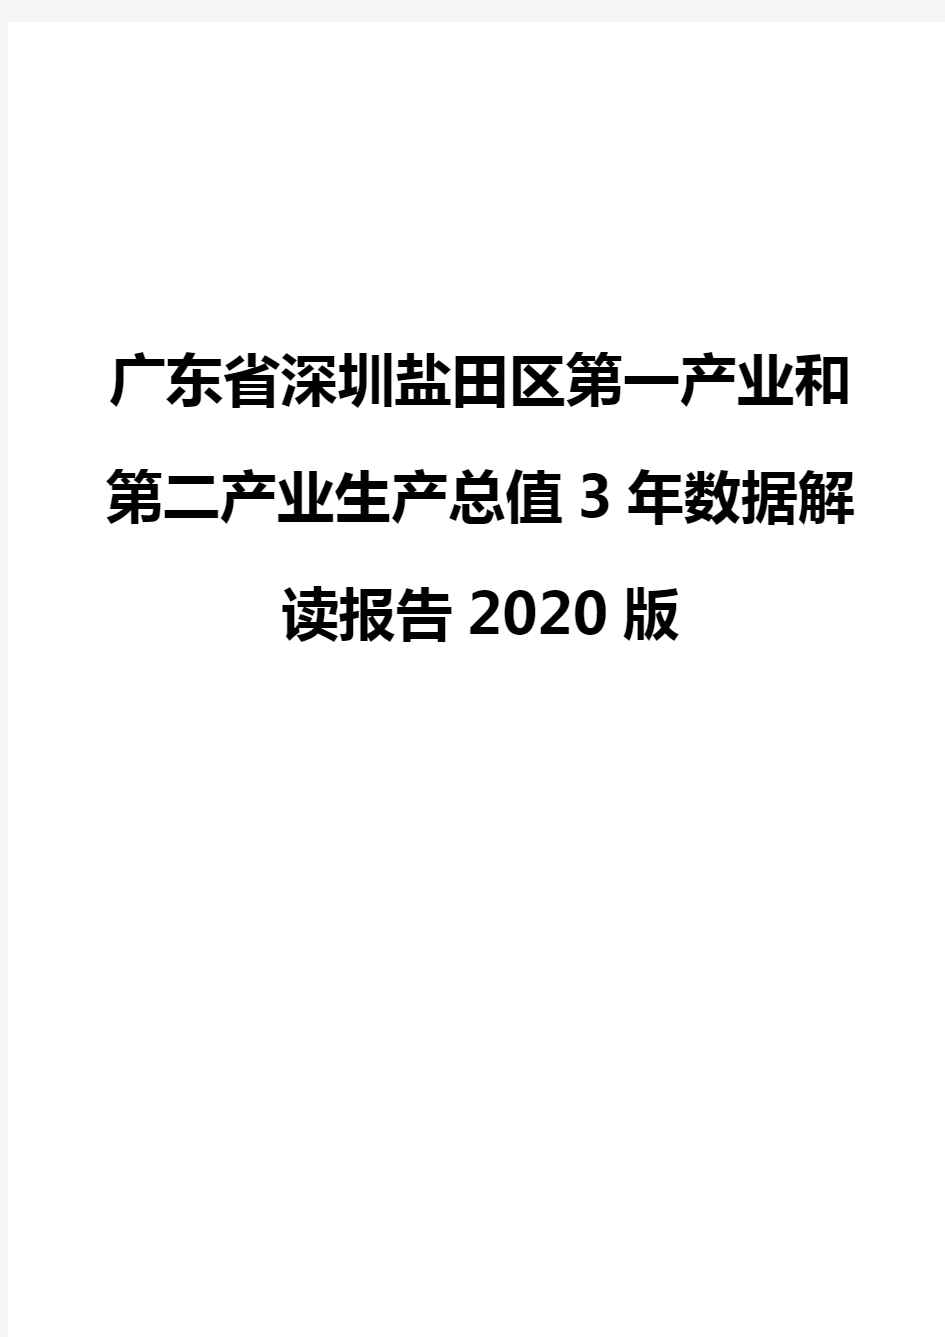 广东省深圳盐田区第一产业和第二产业生产总值3年数据解读报告2020版